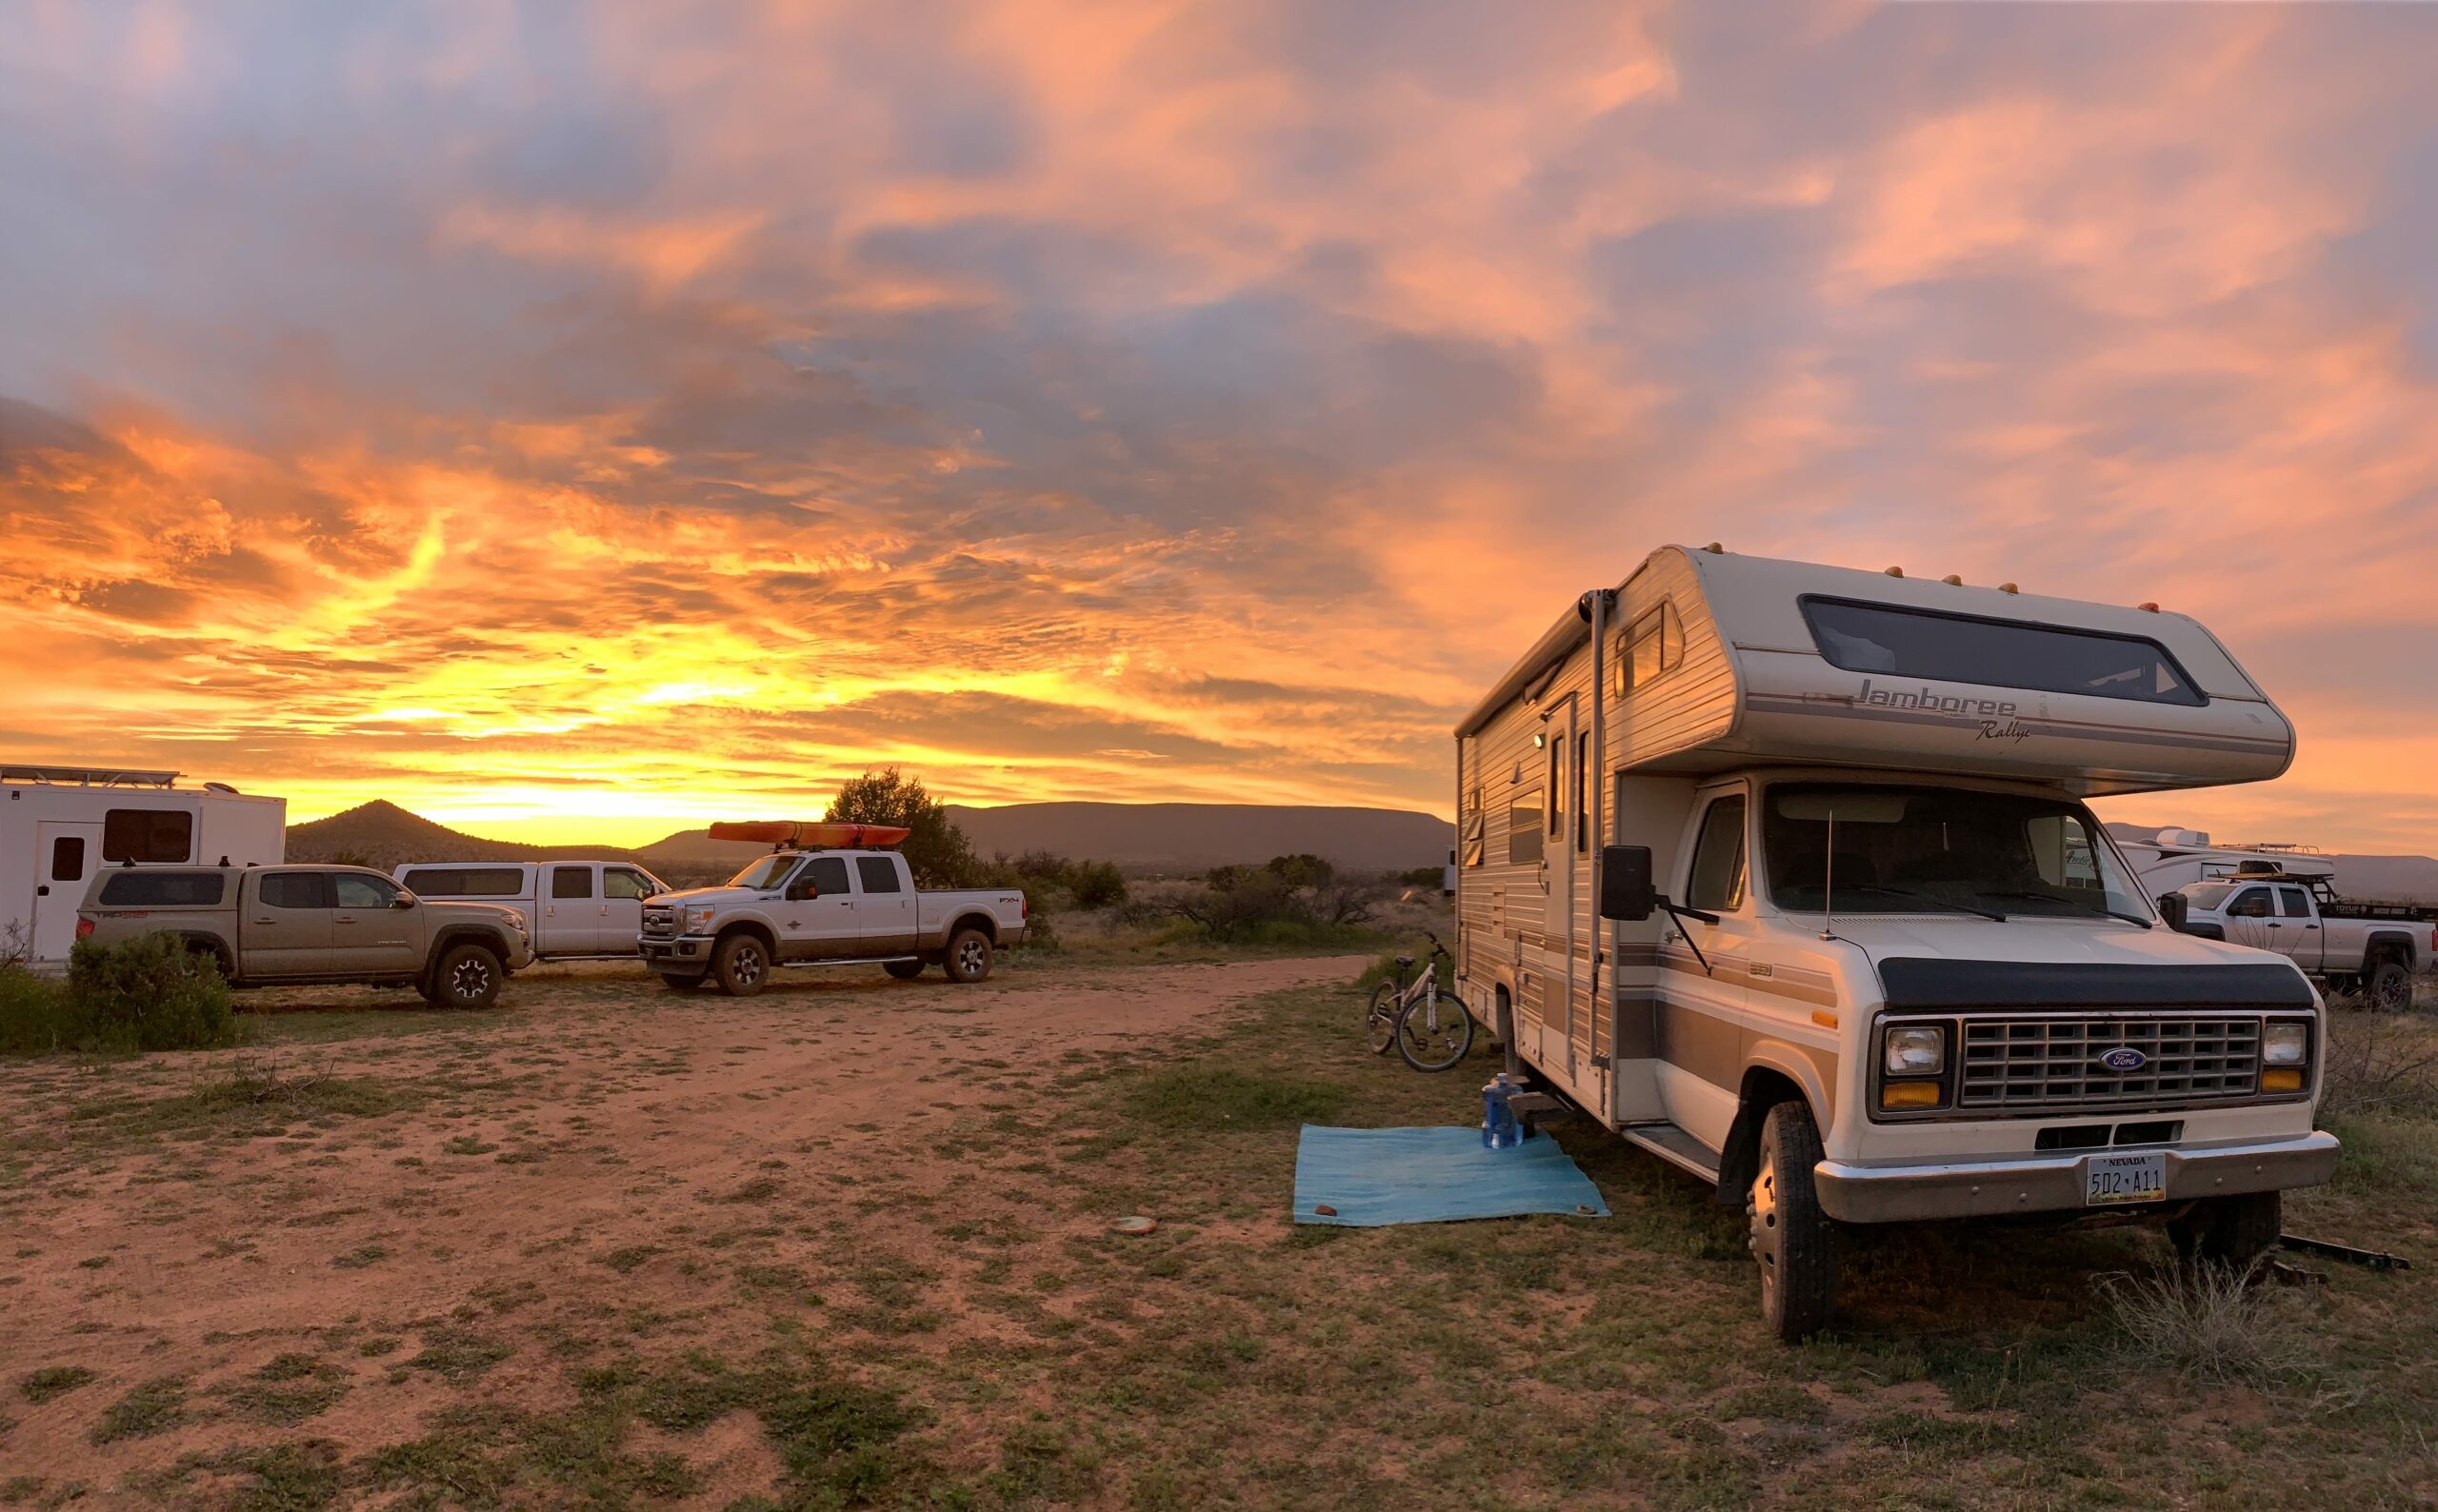 RV in desert at sunset